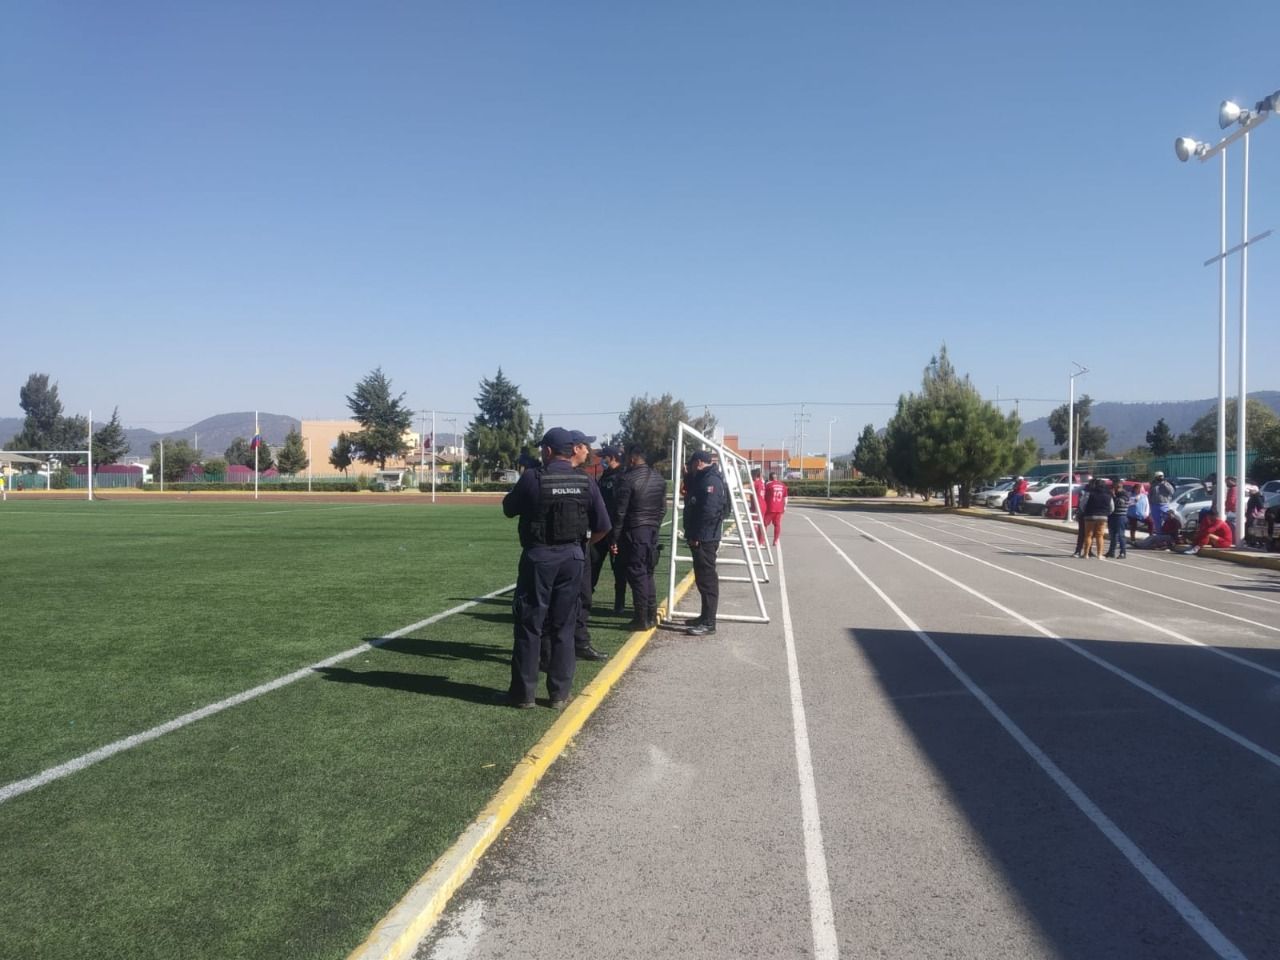 #Para evitar violencia suspenden juegos en el Deportivo Municipal de Amecameca p